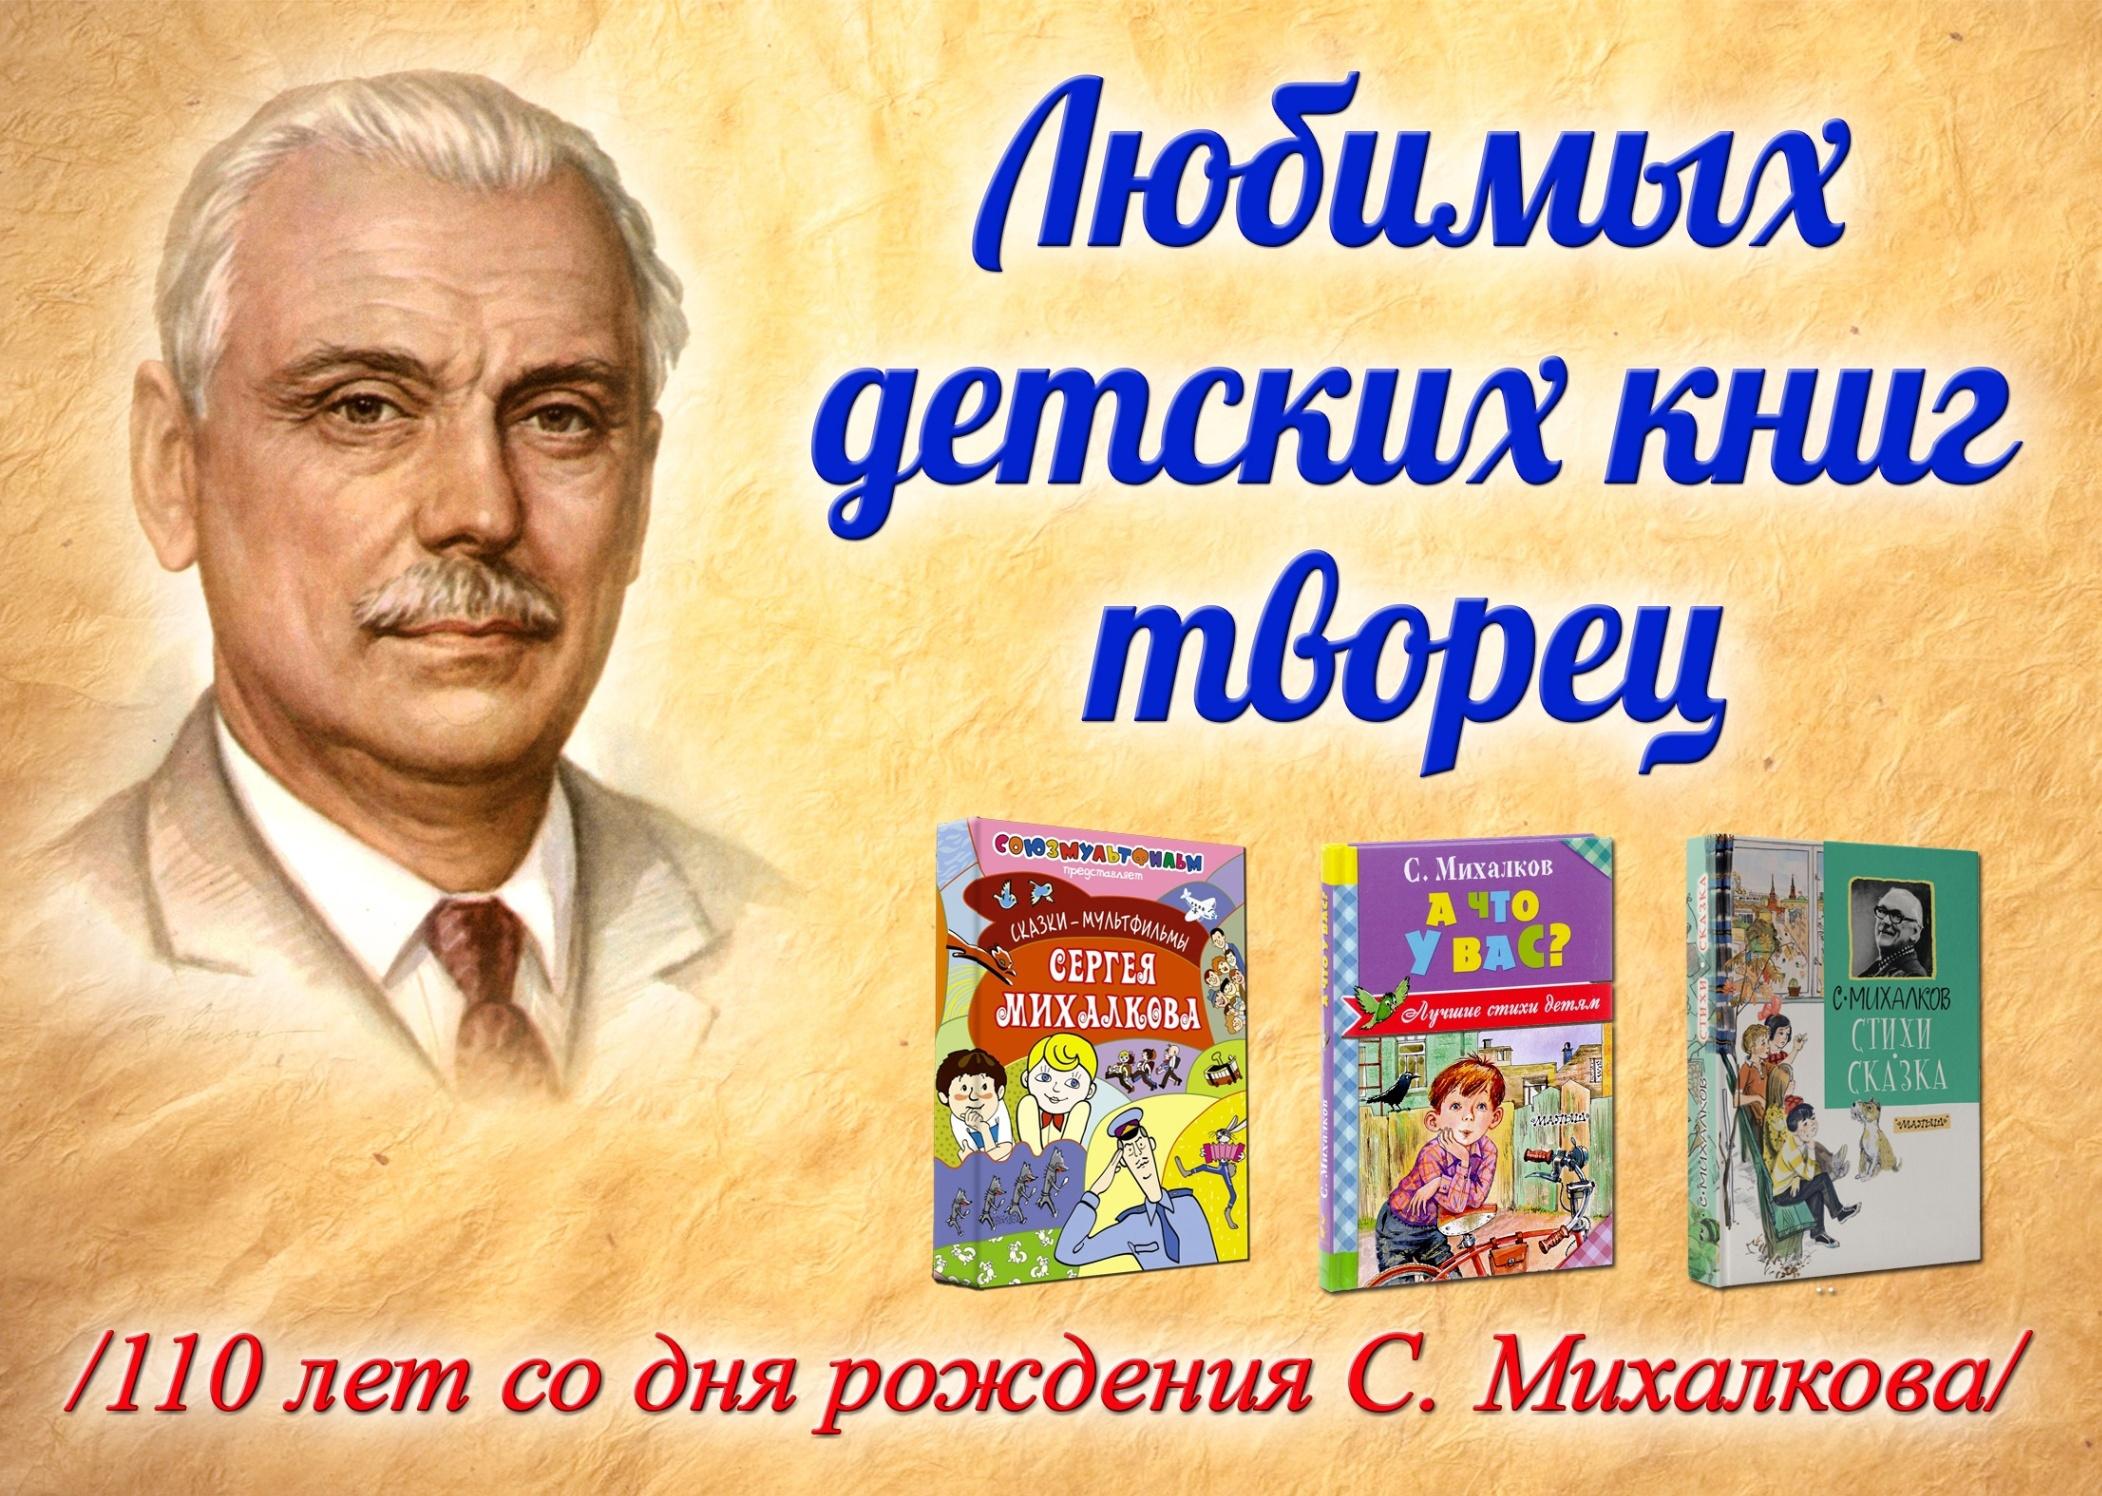 Книги про михалкова. Любимых детских книг Творец. Михалков выставка книг.